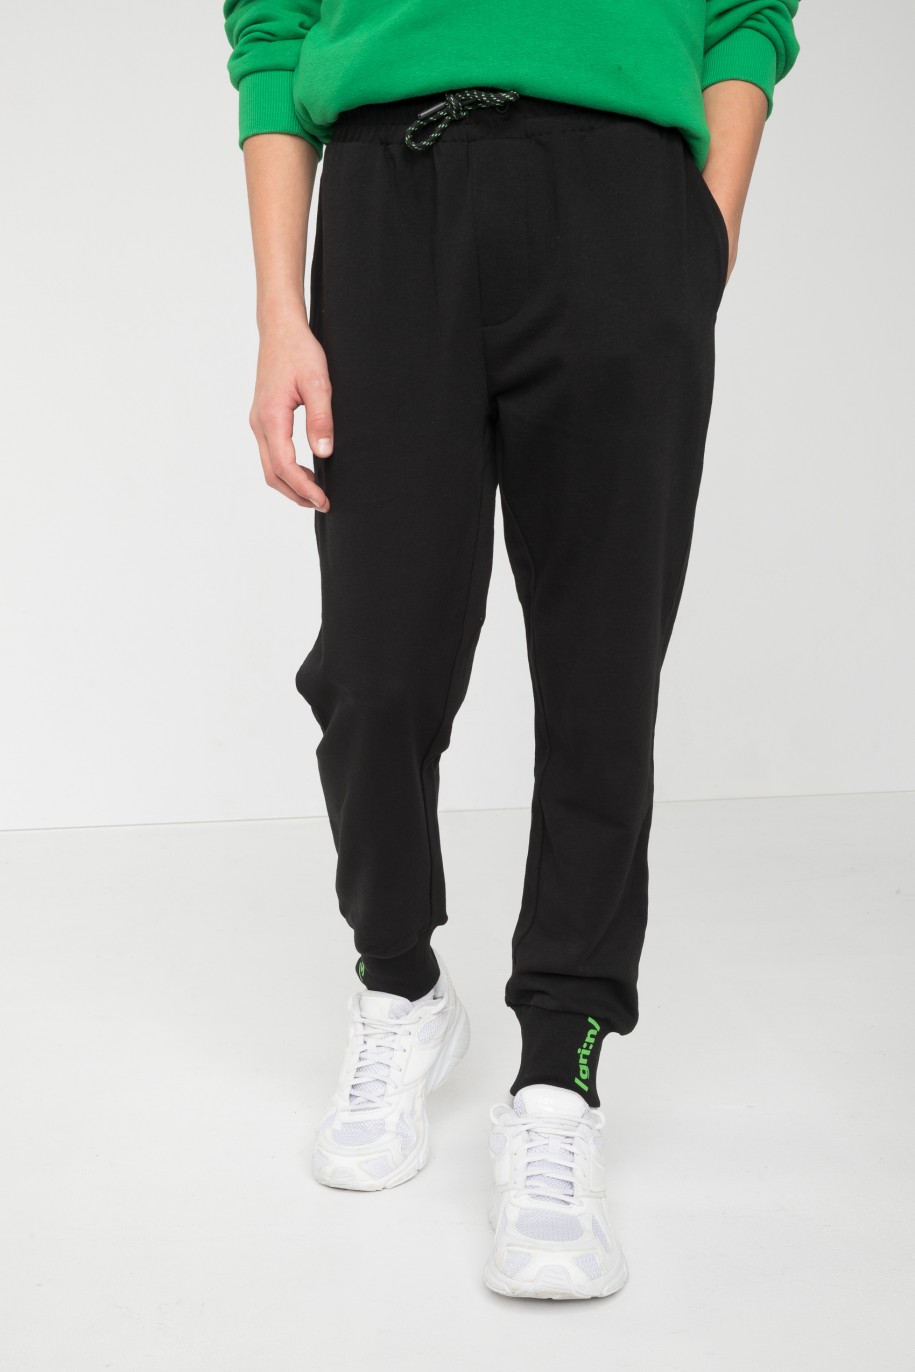 Czarne spodnie dresowe z minimalistycznym nadrukiem na ściągaczach - 45916